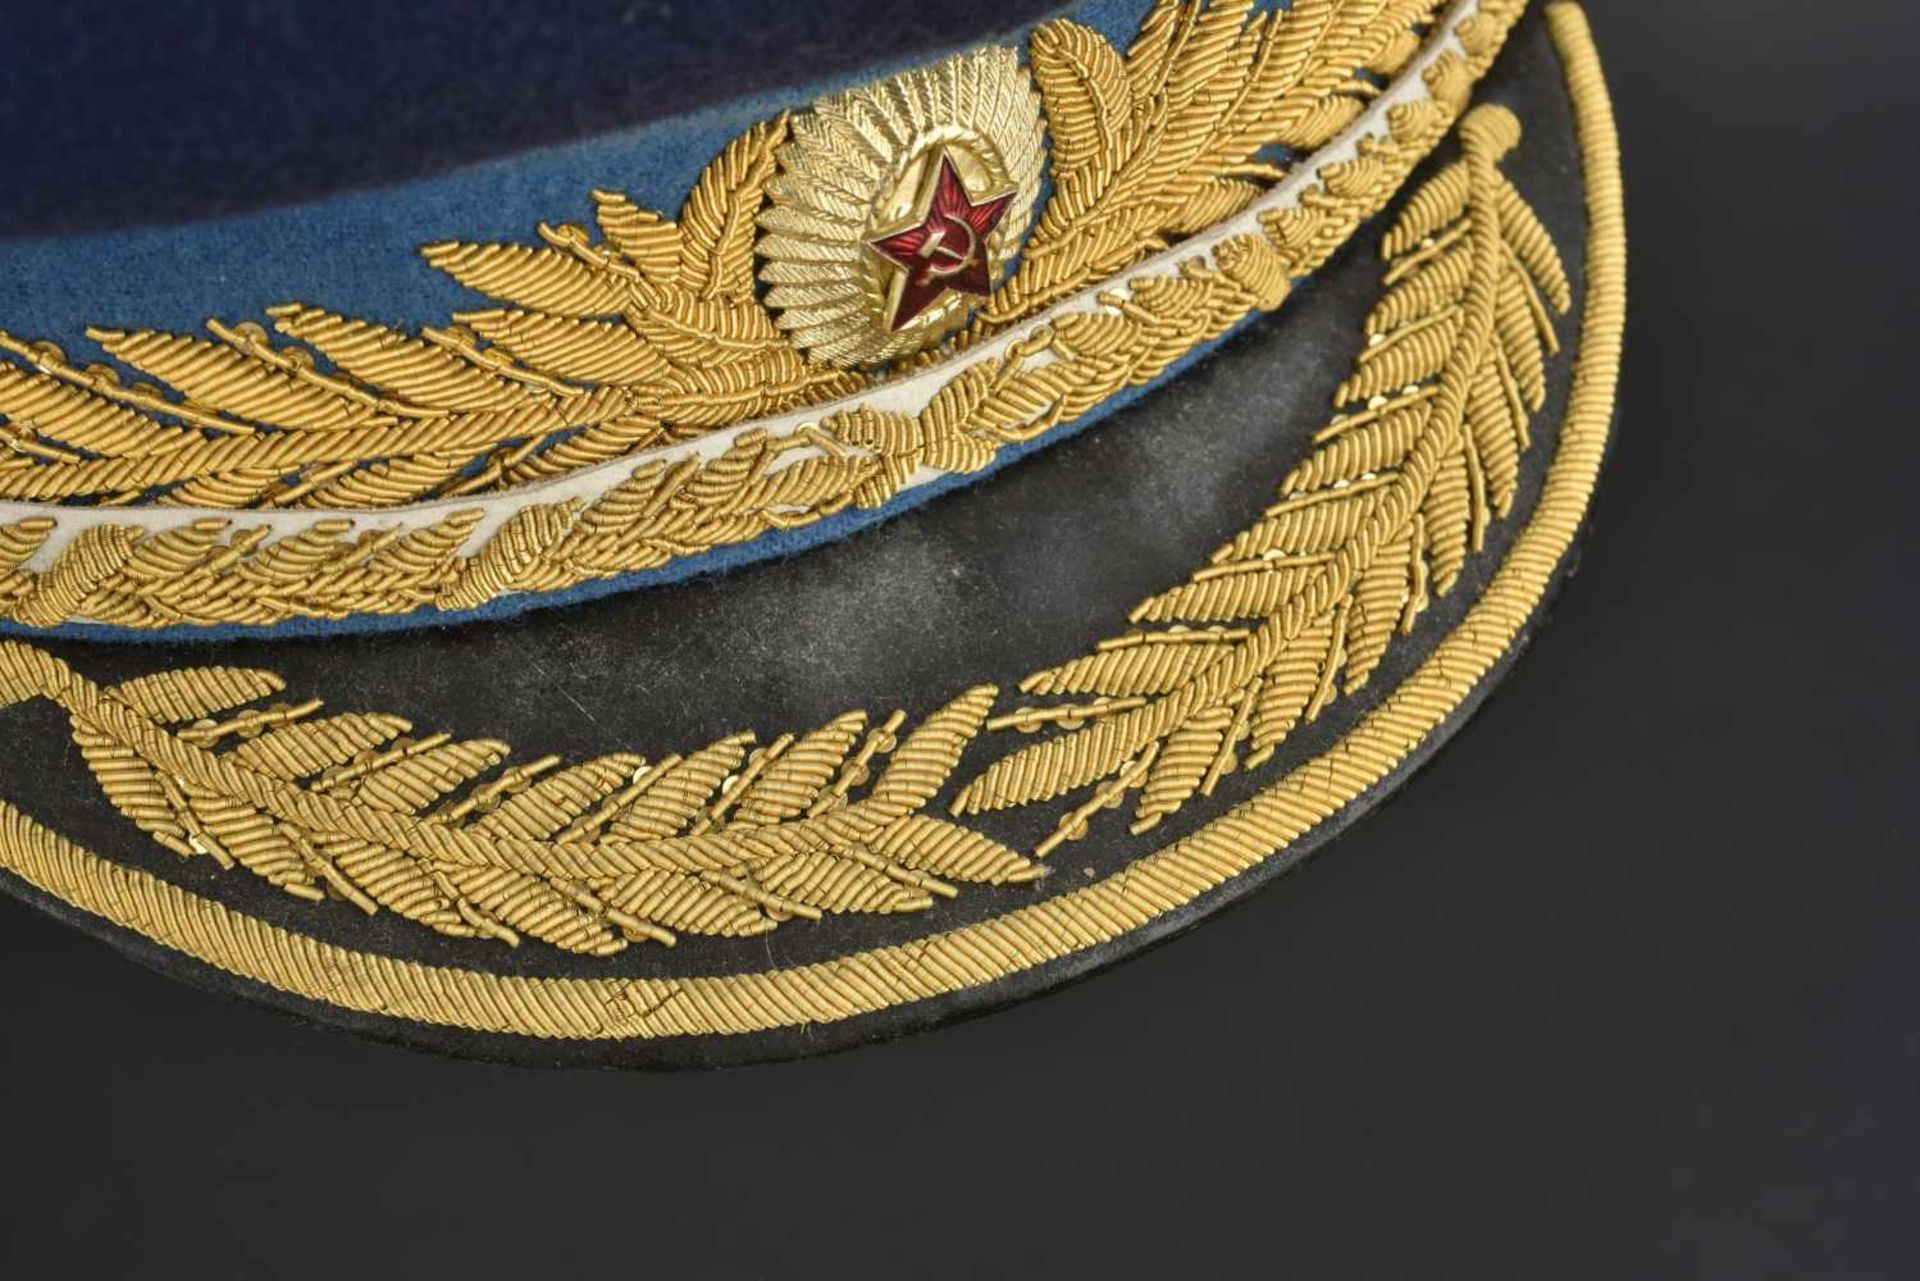 Casquette de général d'aviation soviétique En tissu bleu foncé, bandeau bleu ciel, insigne - Image 4 of 4